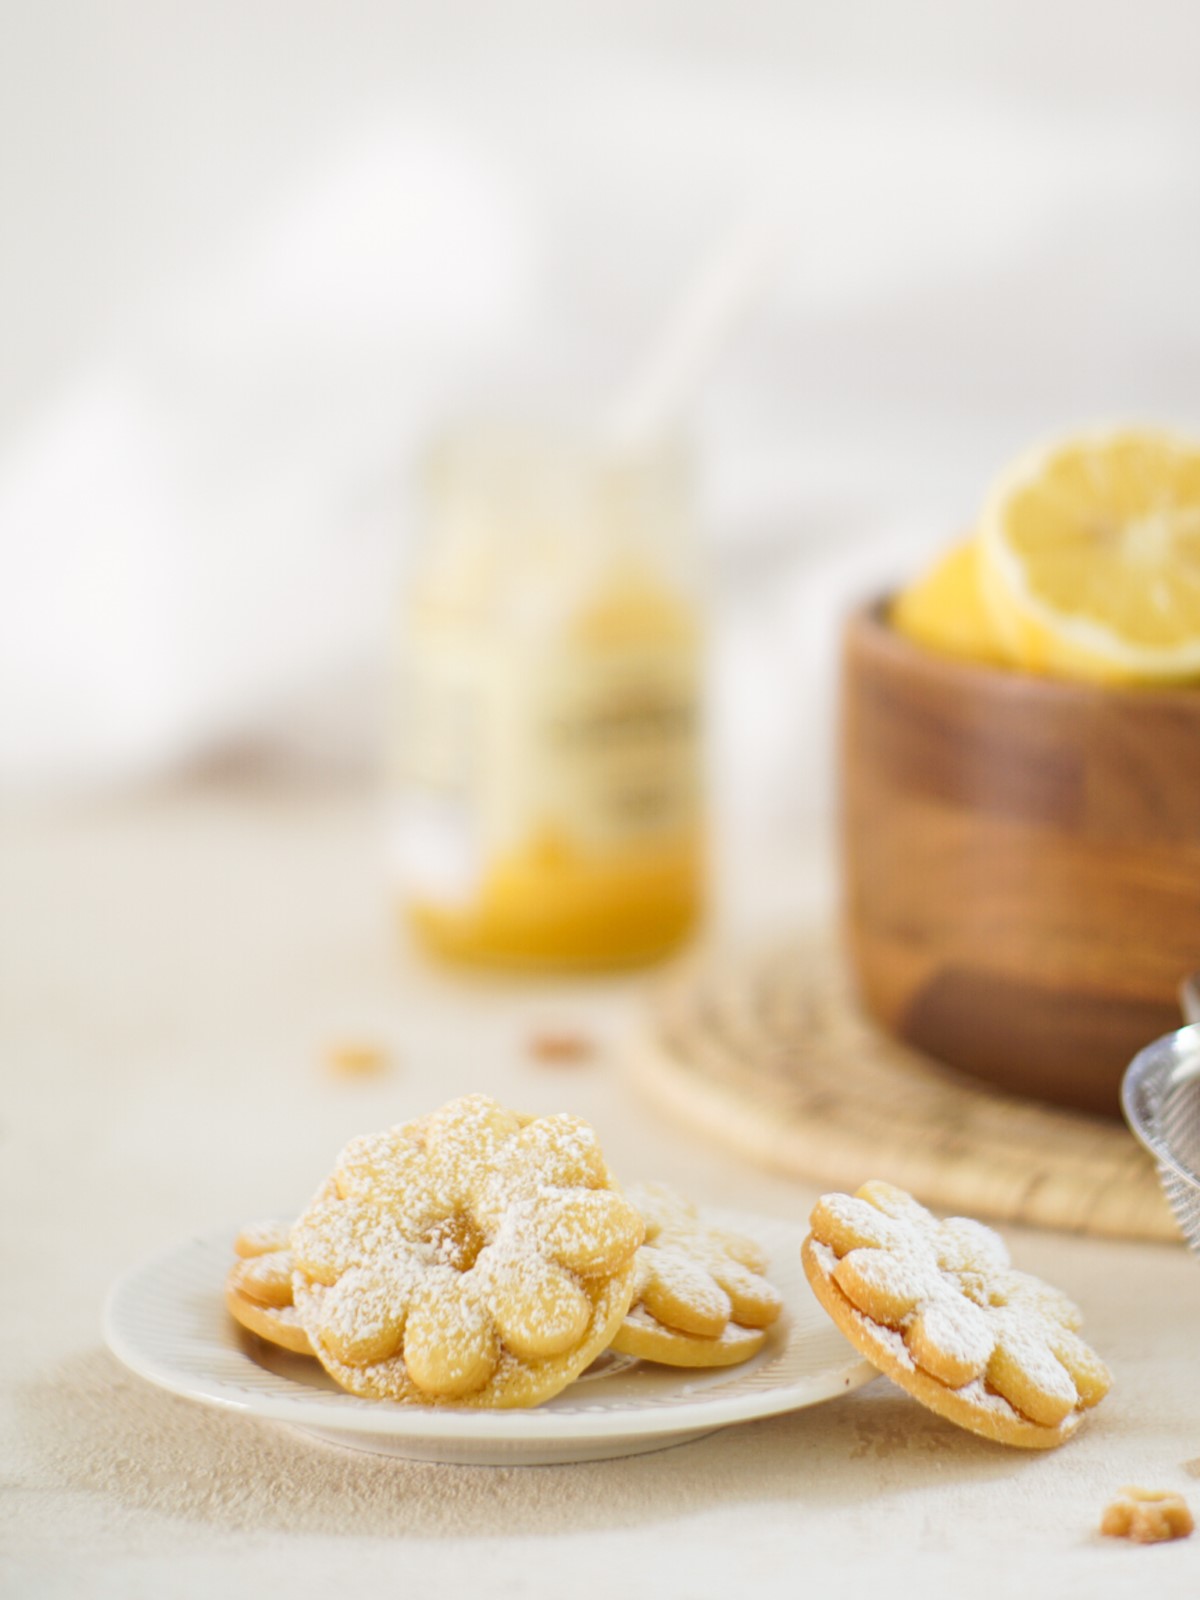 Butterkekse mit Zitronen Curd - Butter cookies with lemon curd